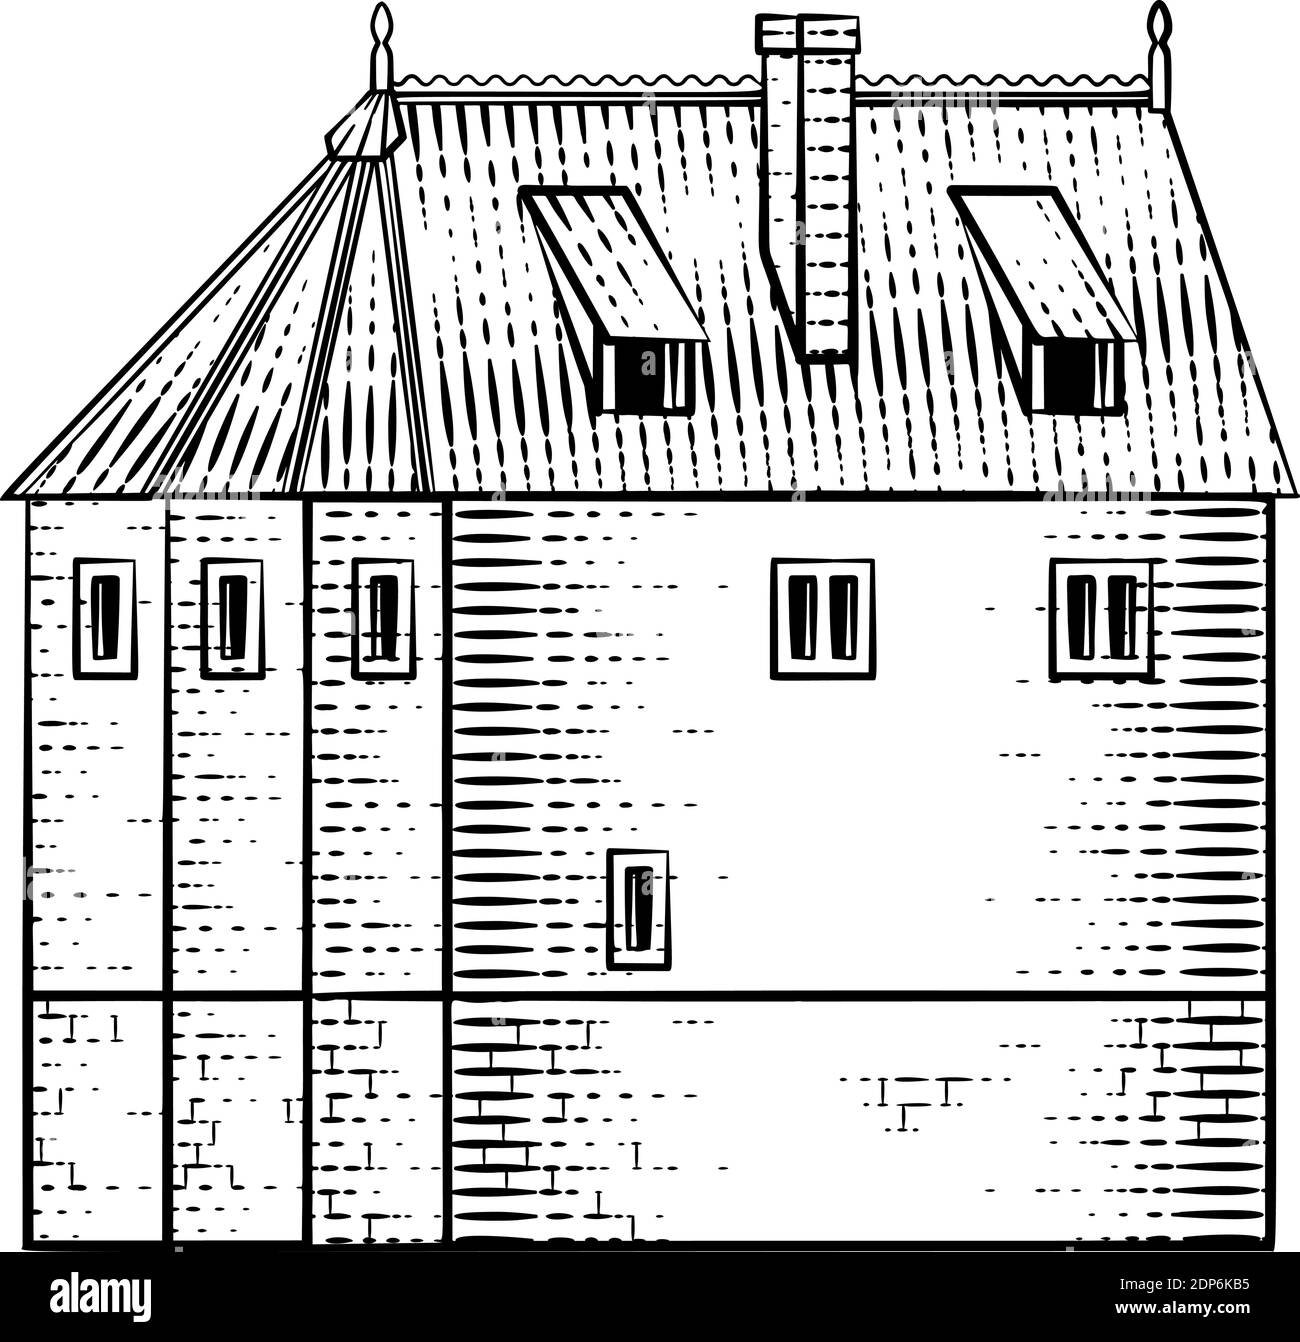 Old Medieval House Inn Building Vintage Woodcut Illustration de Vecteur